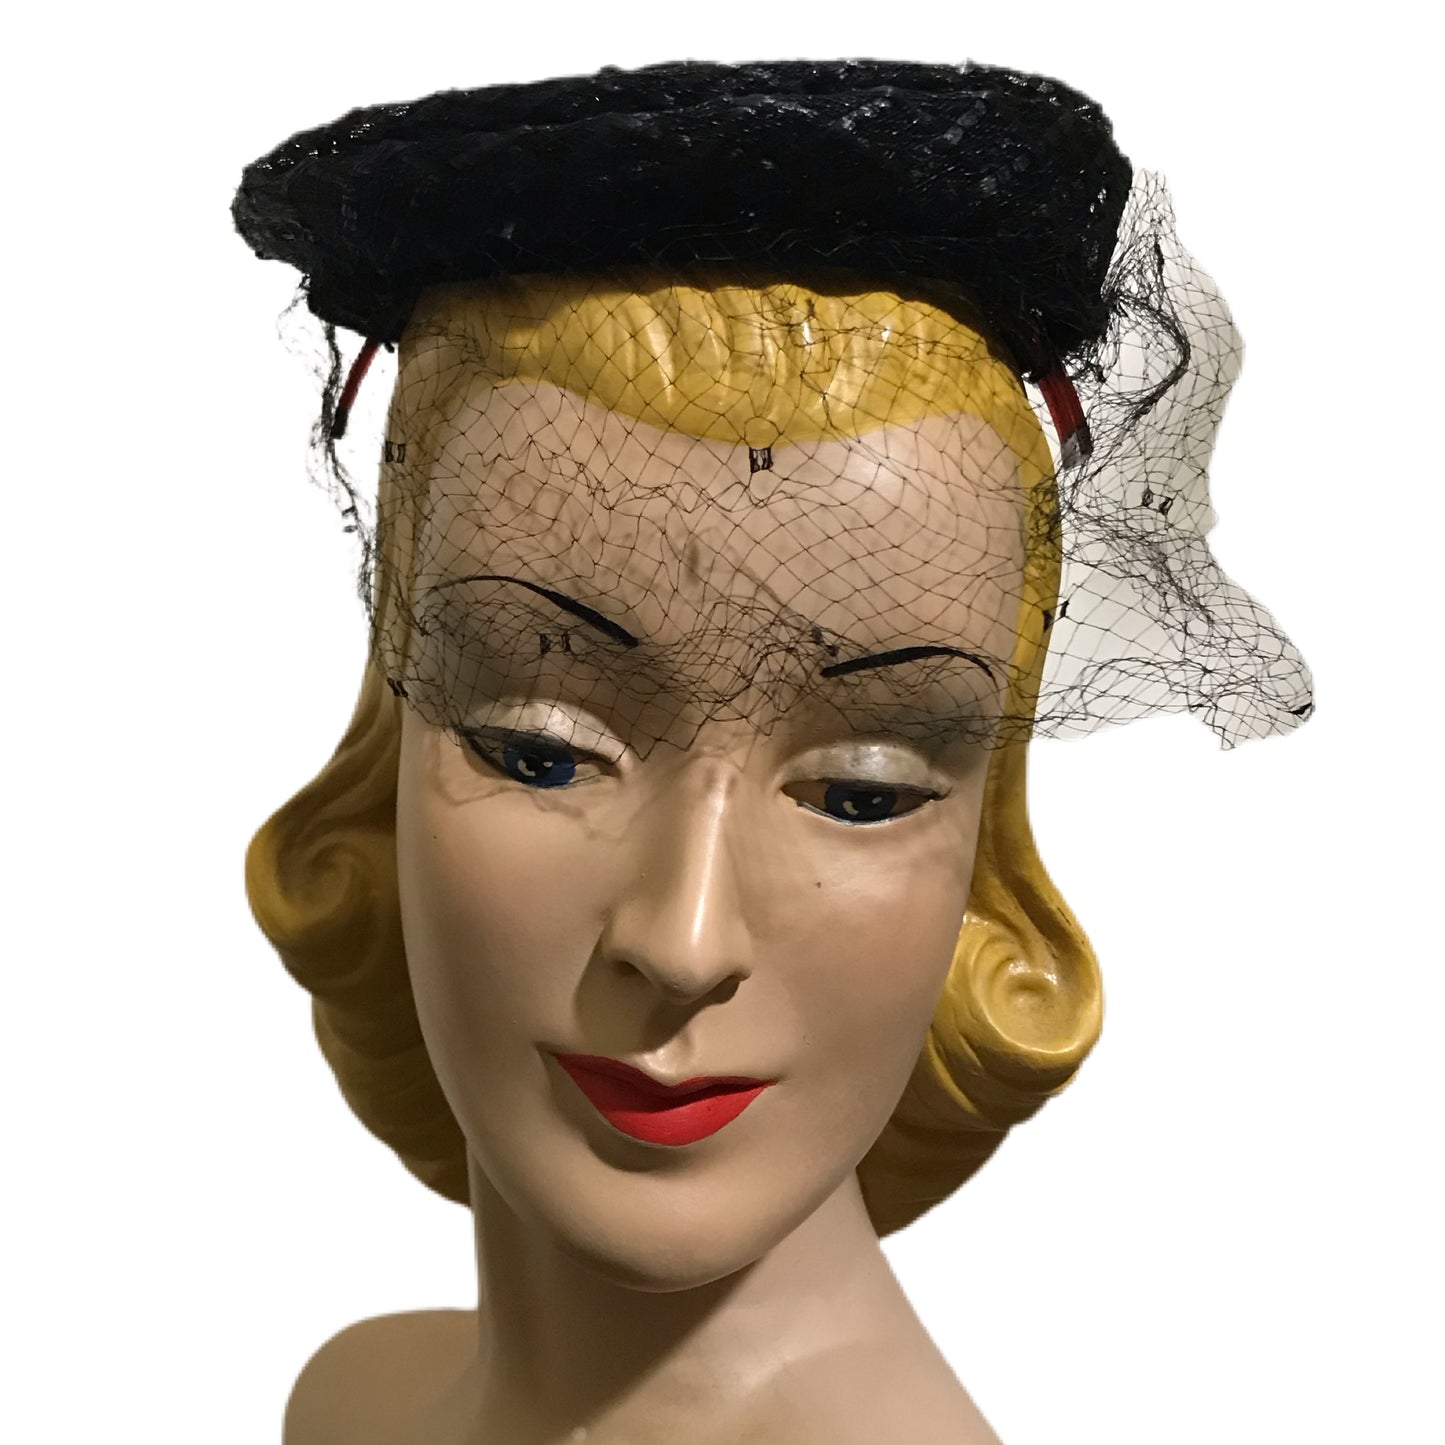 Swirled Black Horsehair Braid Veiled Hat circa 1960s